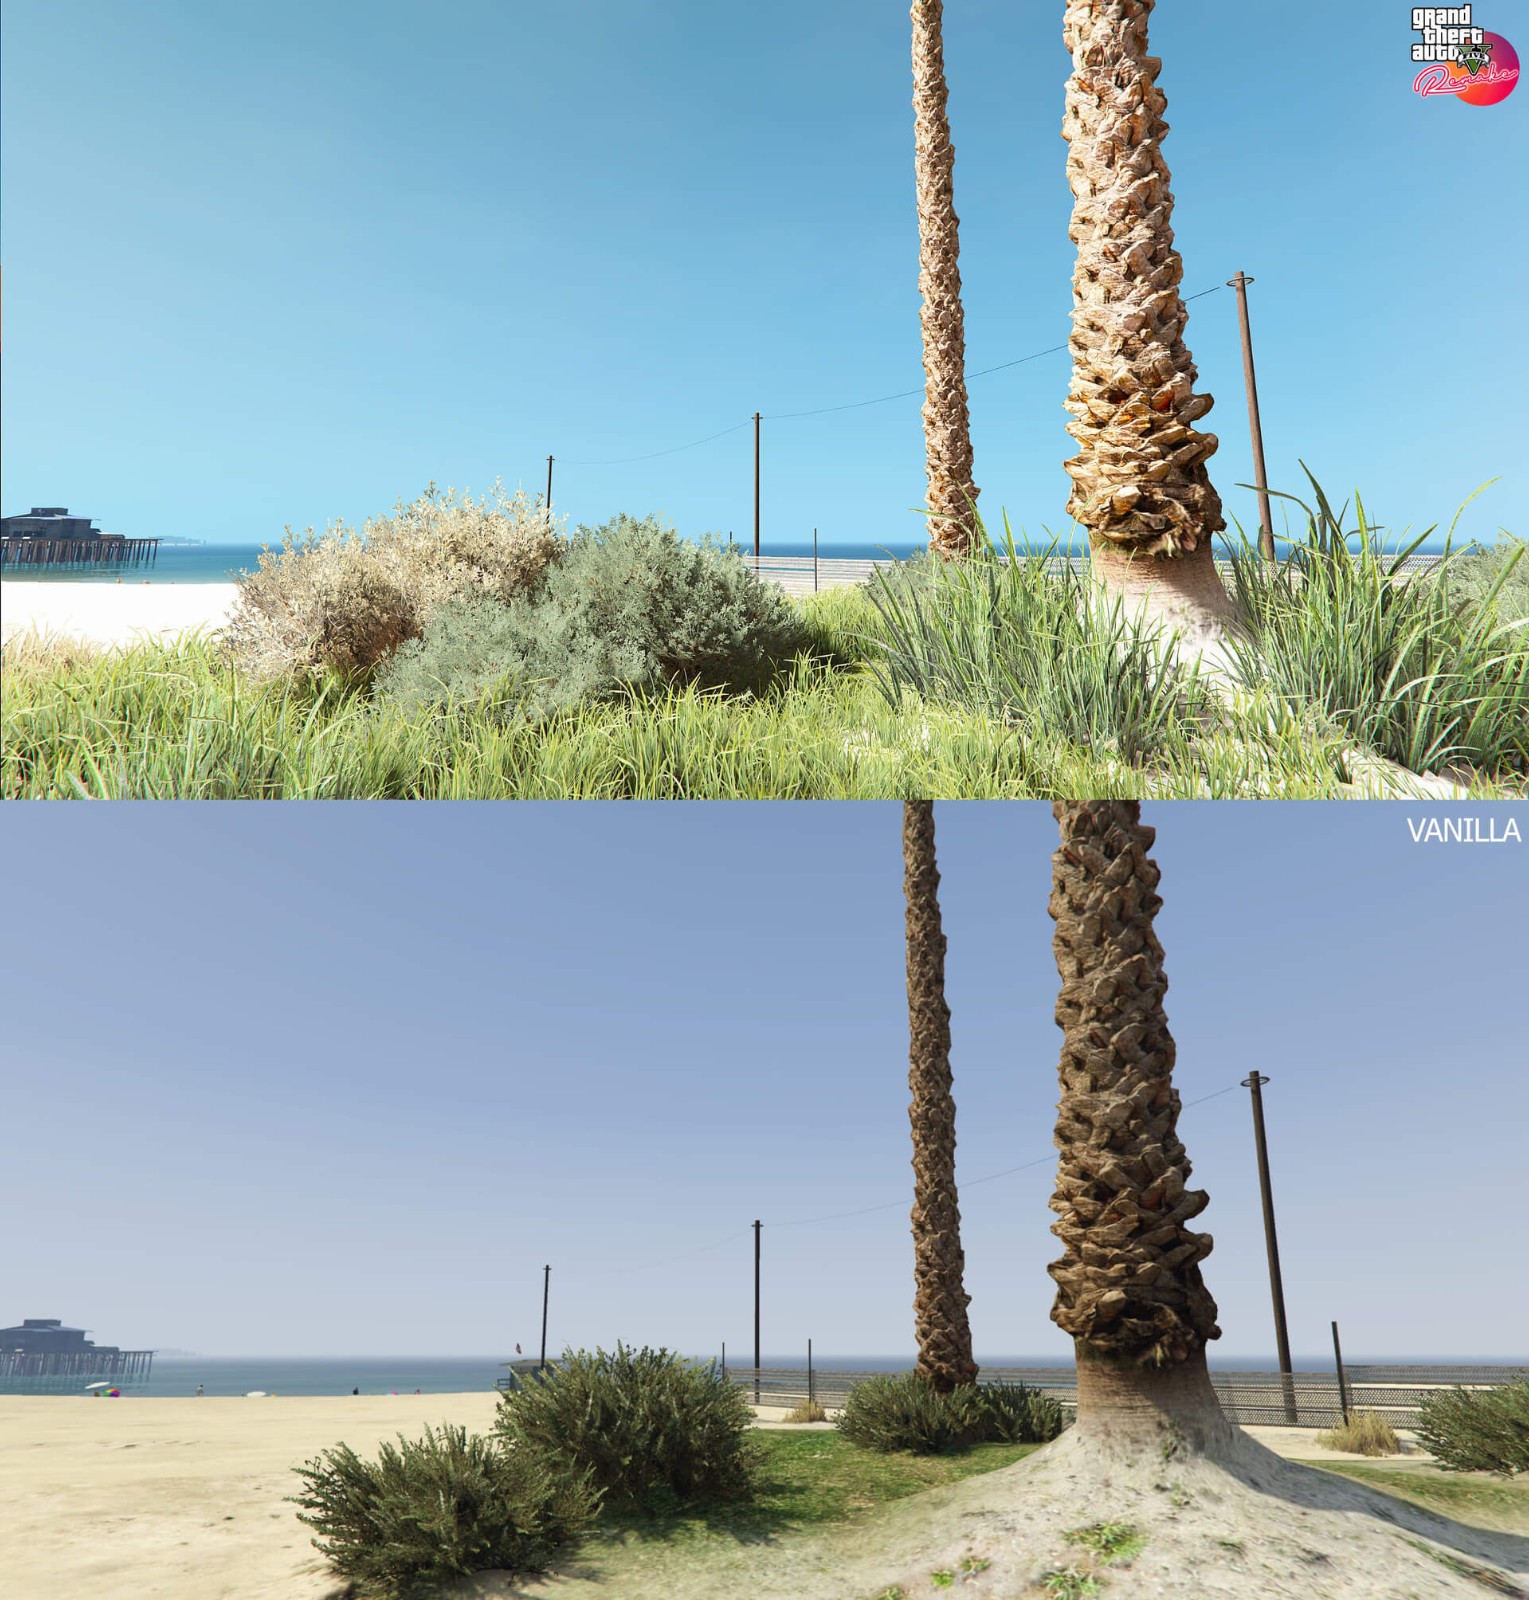 《俠盜獵車手5》重製Mod演示 遊戲畫面脫胎換骨